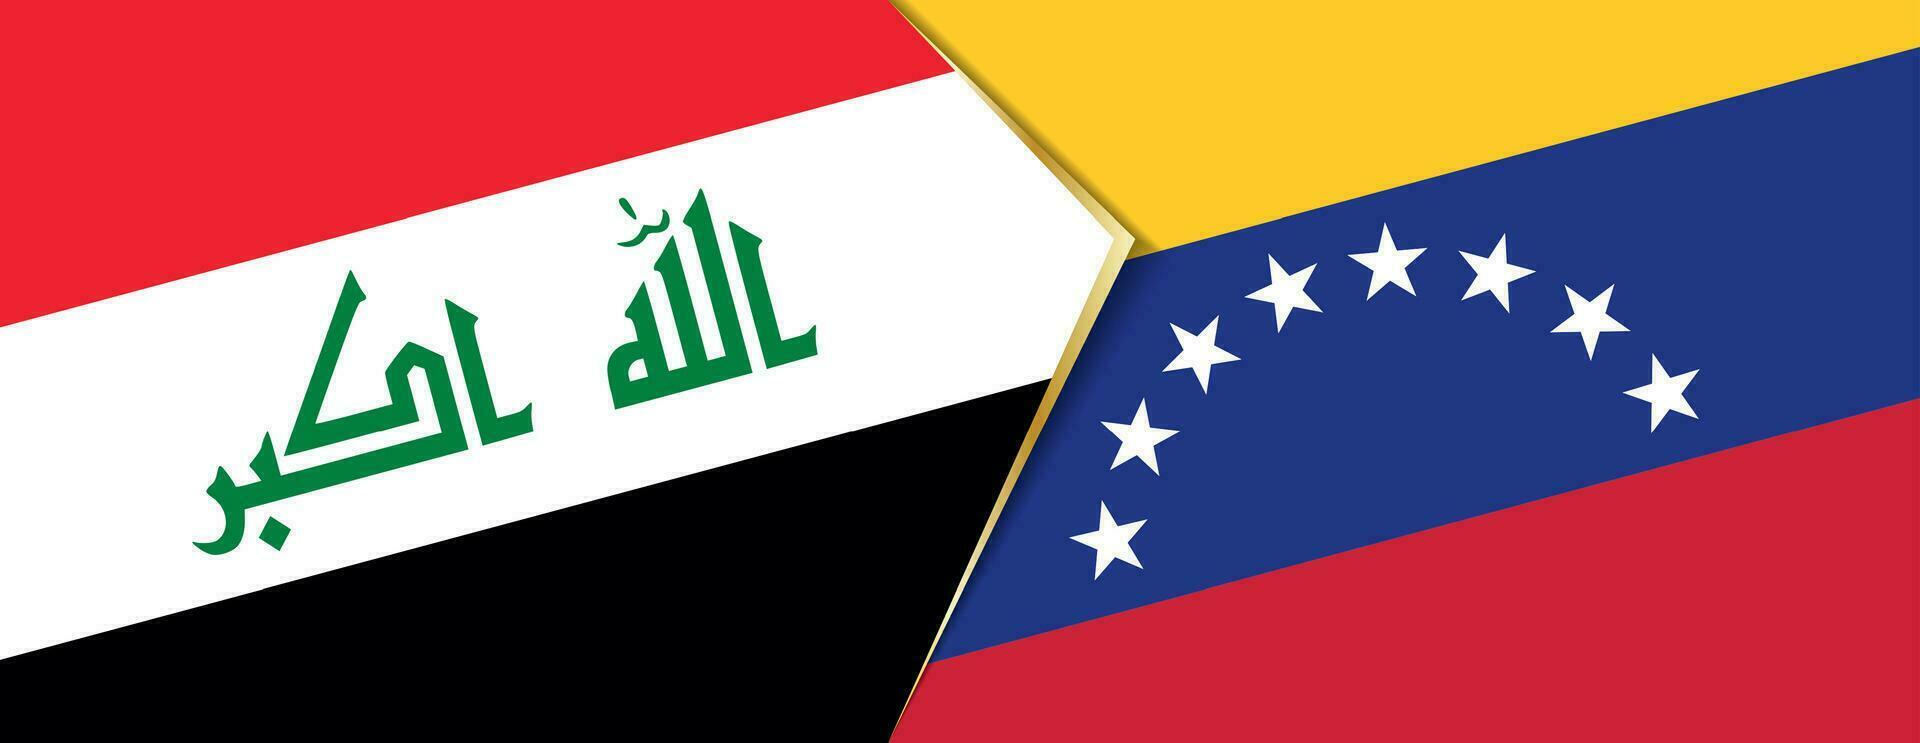 Iraque e Venezuela bandeiras, dois vetor bandeiras.